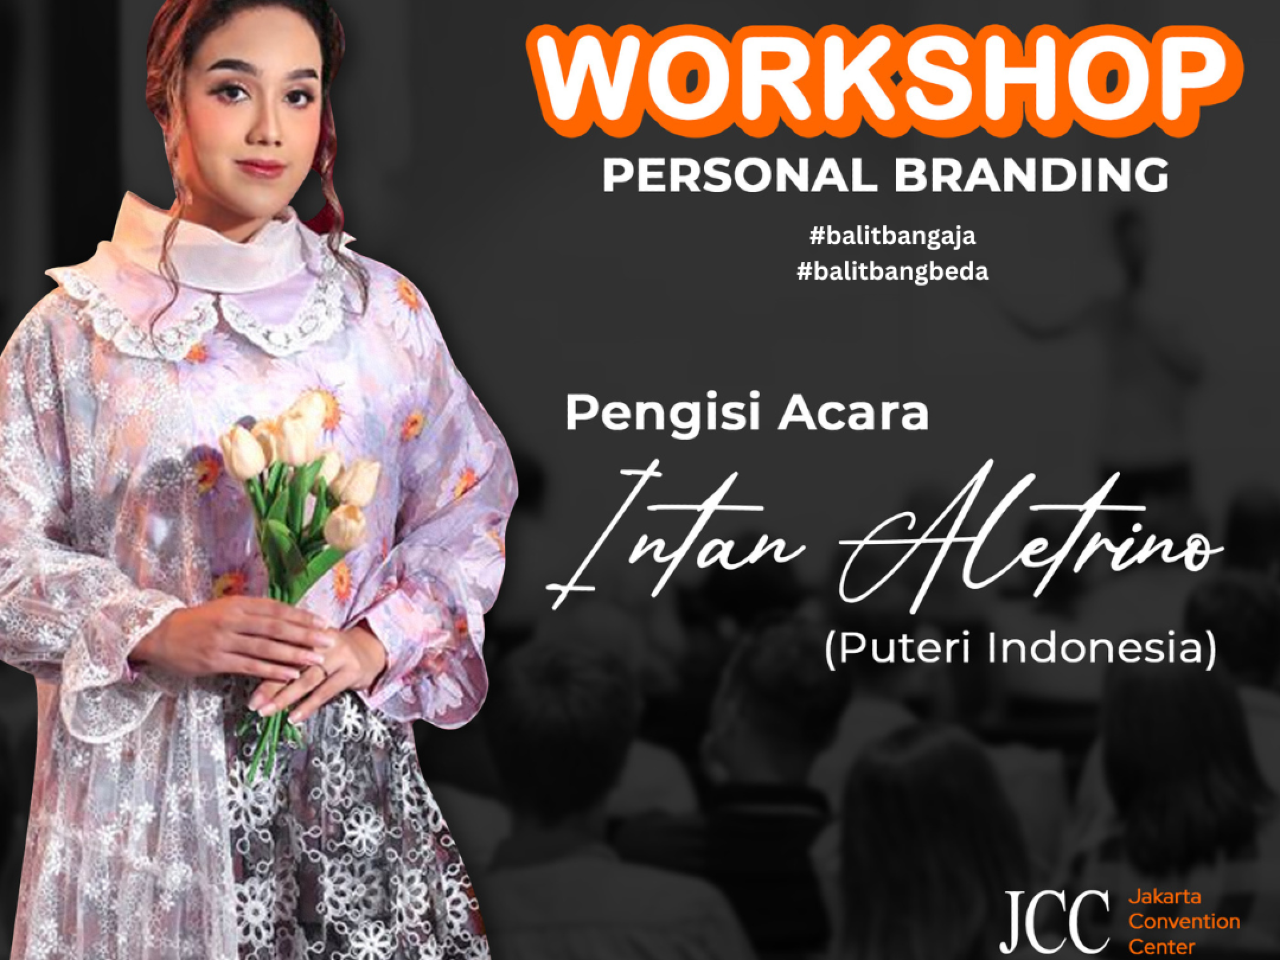 Sabtu Penuh Inspirasi! Workshop Personal Branding Bersama Puteri Indonesia

